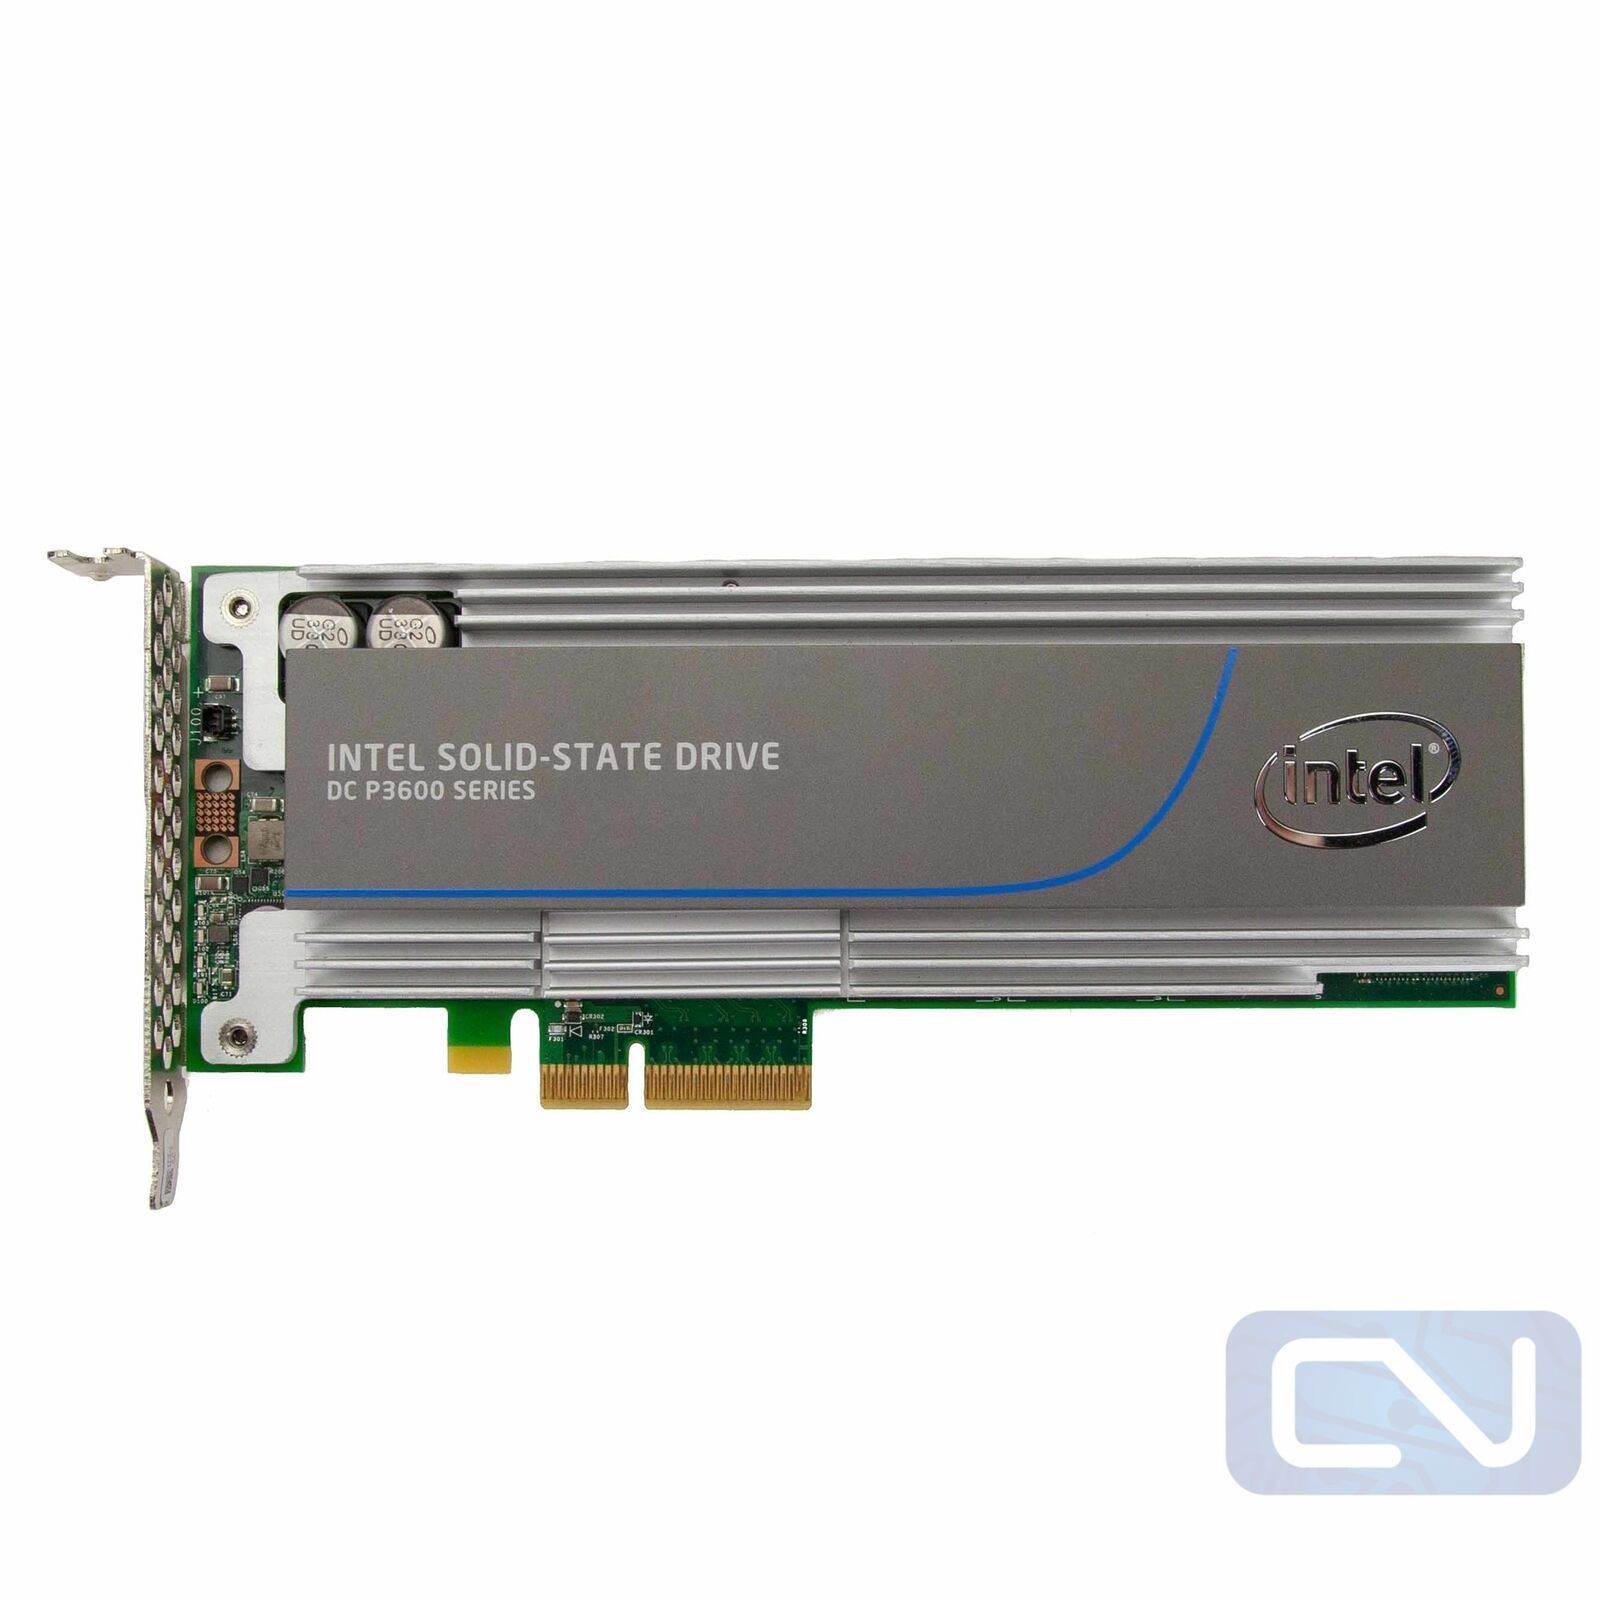 Intel DC P3600 Series SSDPEDME016T4S 1.6 TB PCIe 3.0 x4 SSD Oracle P3605 7307468